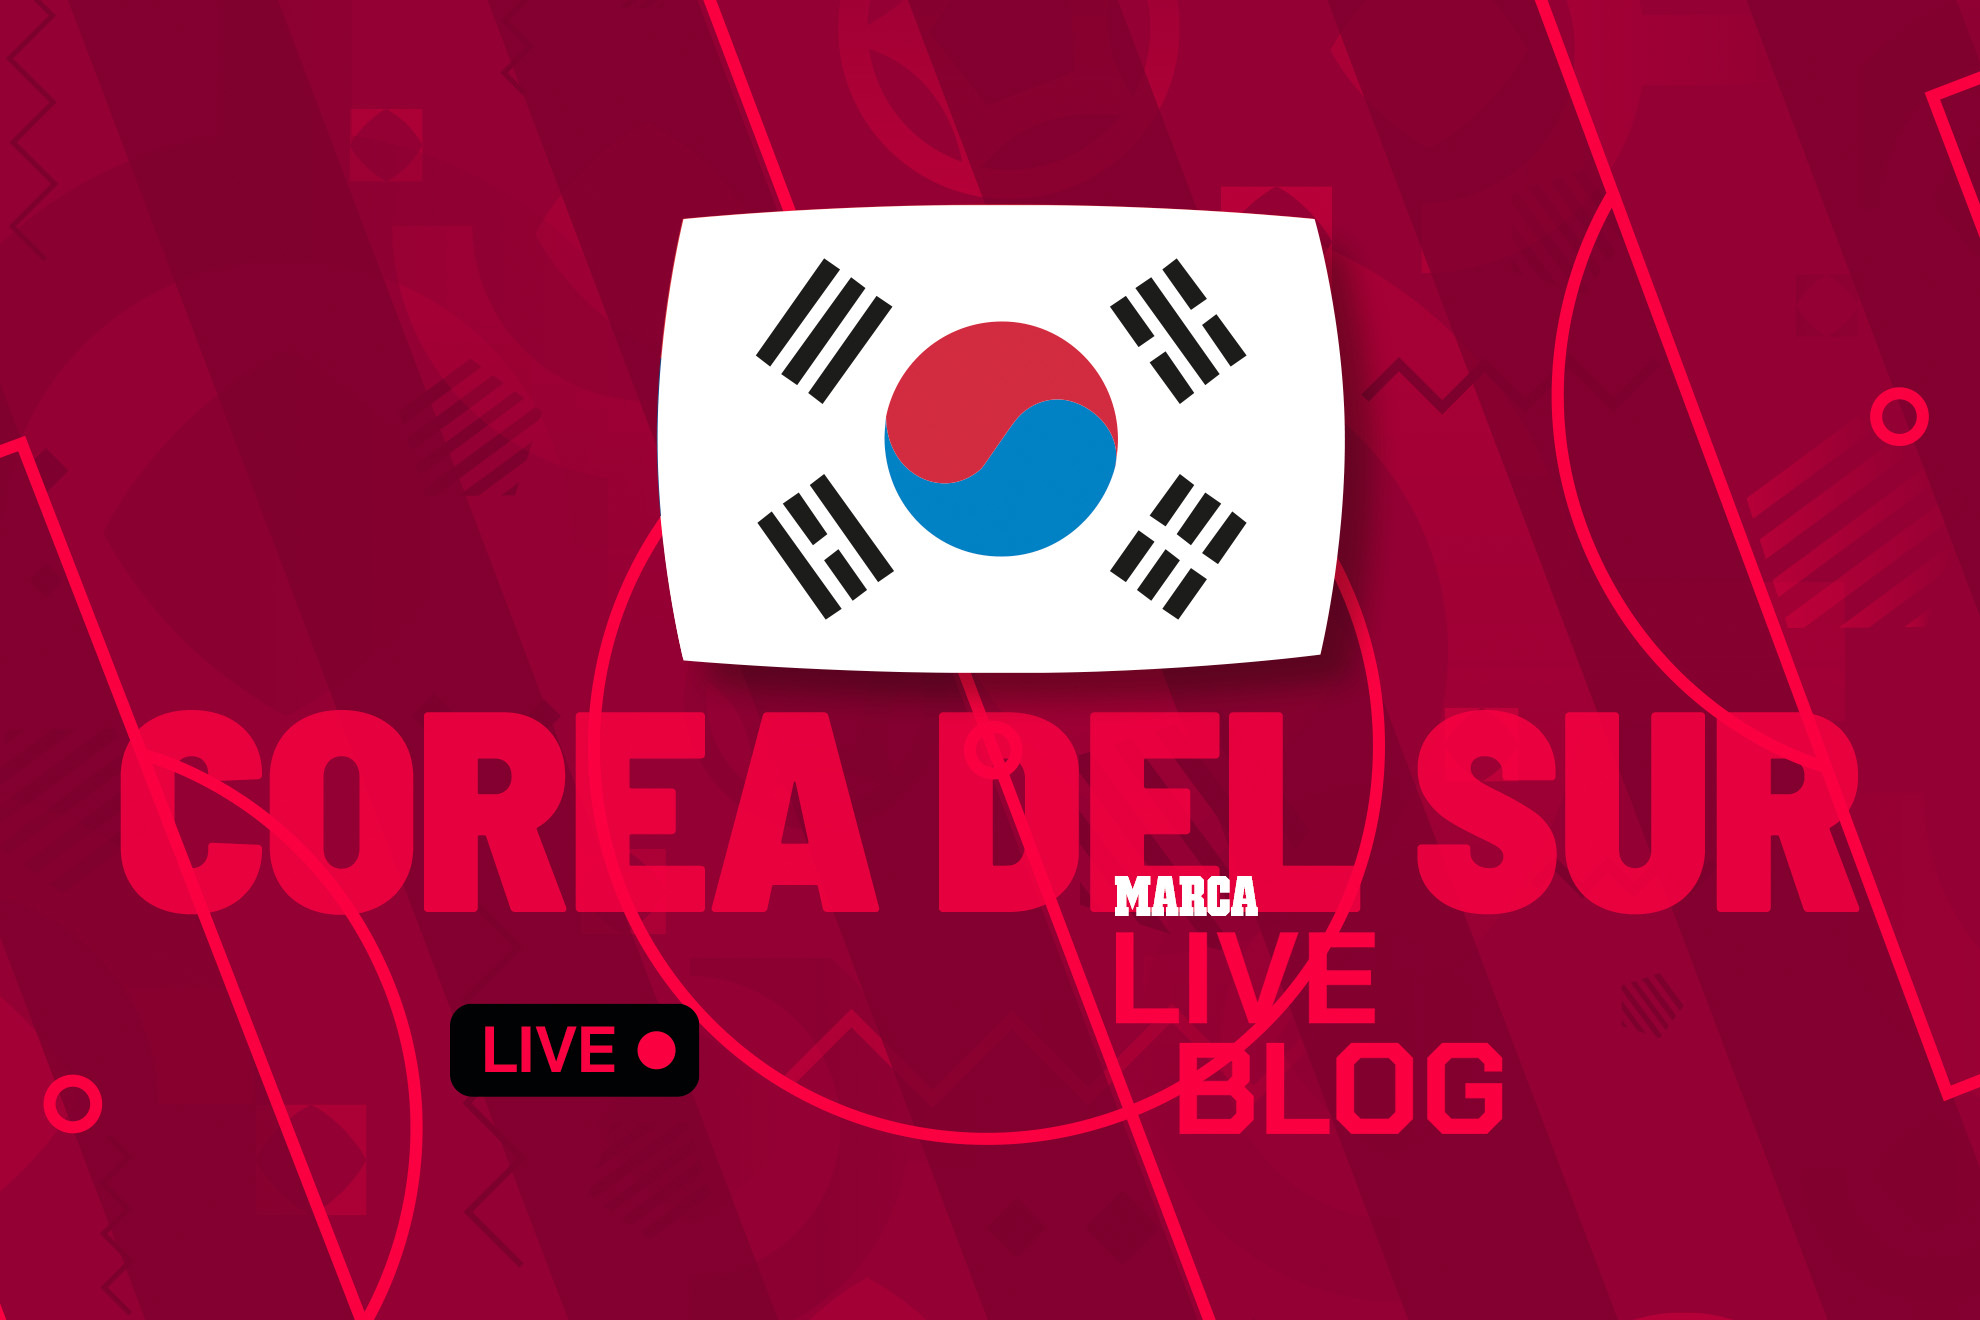 Corea del Sur en el Mundial 2022 de Qatar, en directo | Última hora sobre la selección coreana en la Copa del Mundo